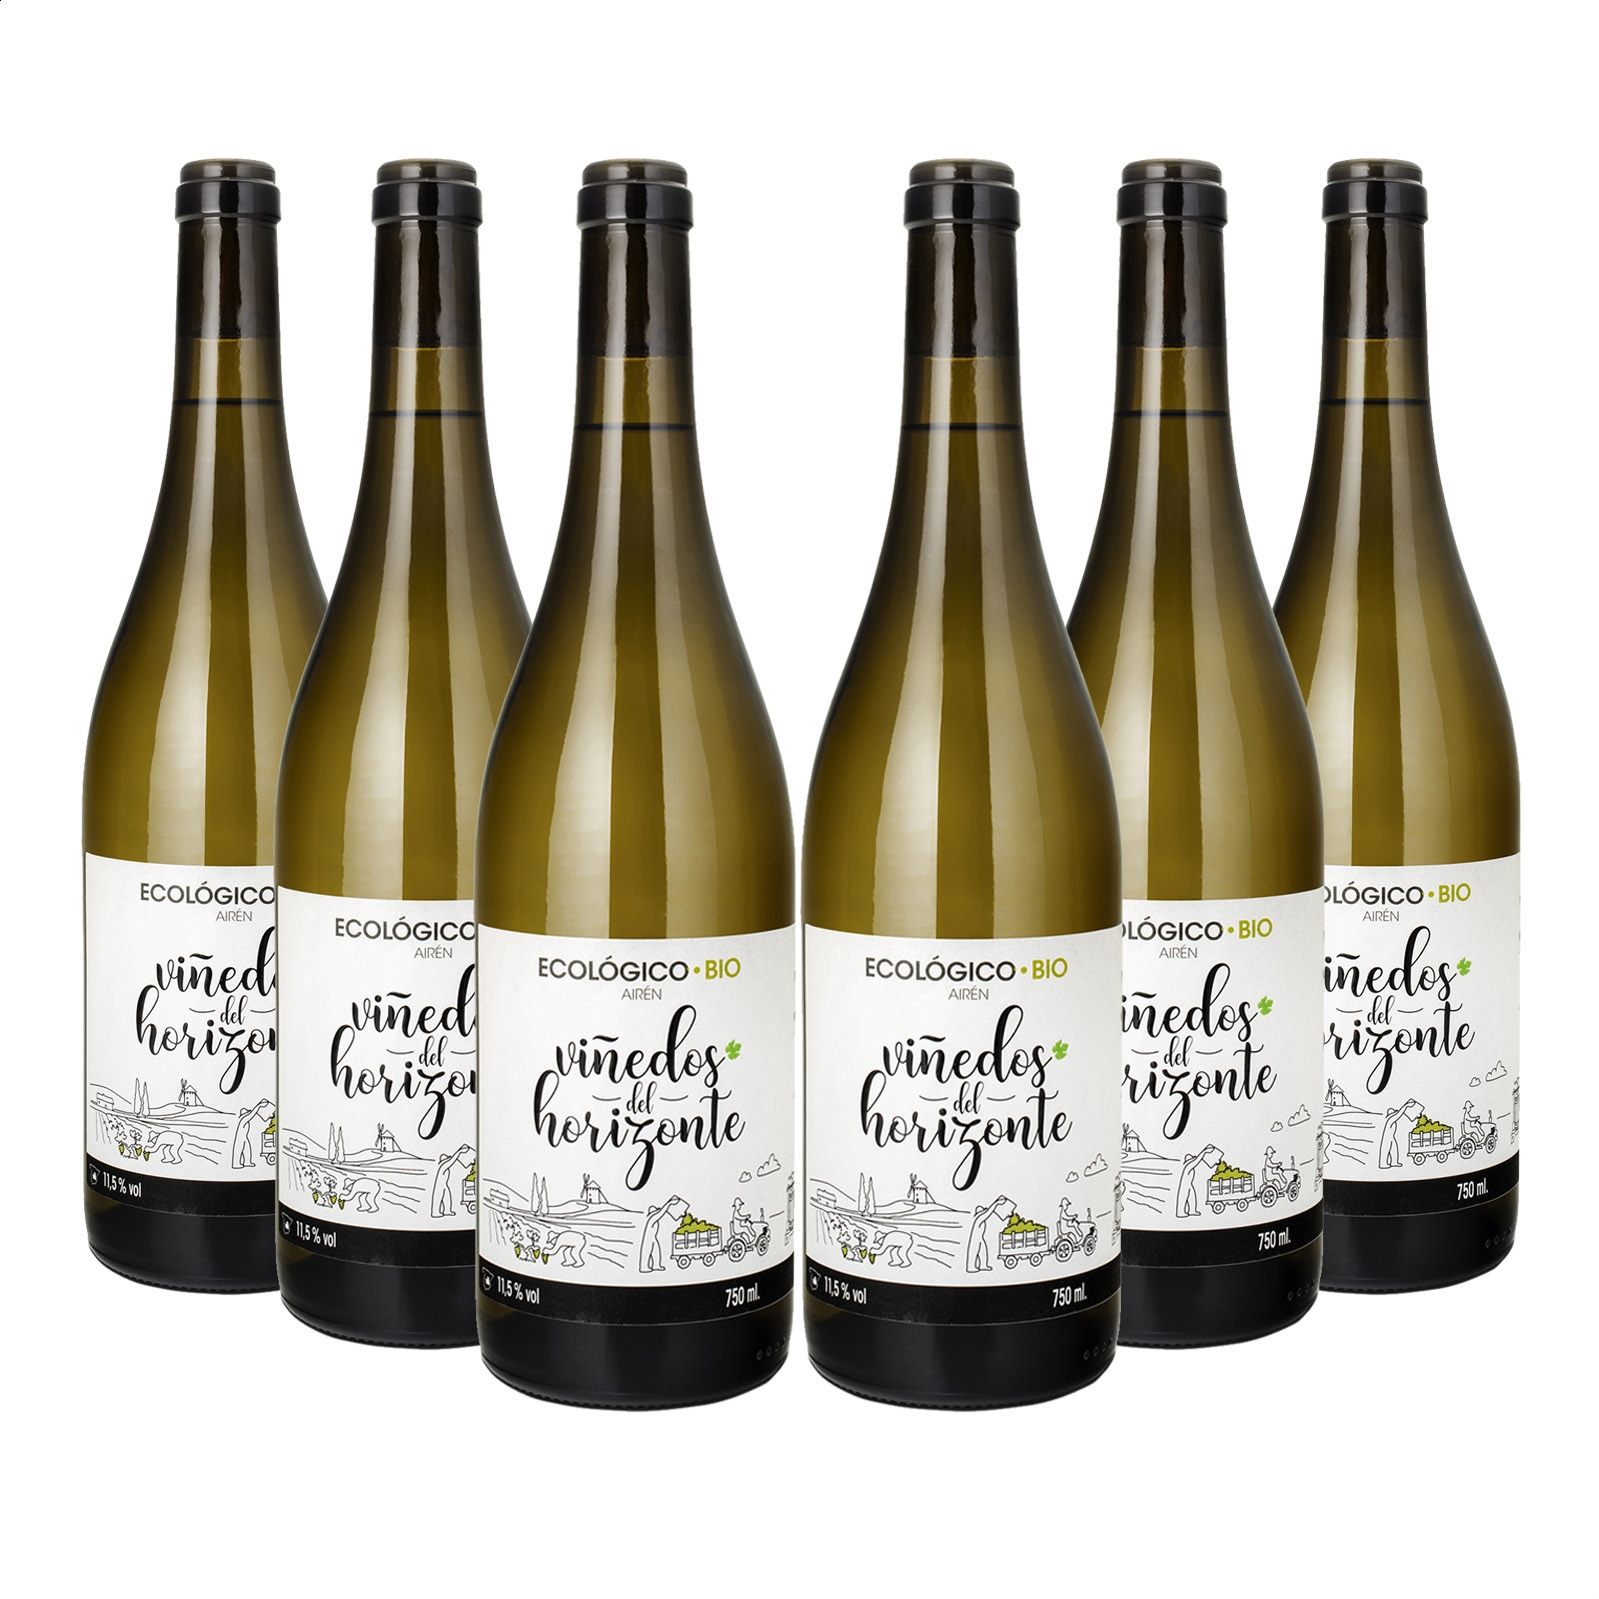 Viñedos del Horizonte - Vino blanco Airén ecológico IGP Vino de la Tierra de Castilla 75cl, 6uds